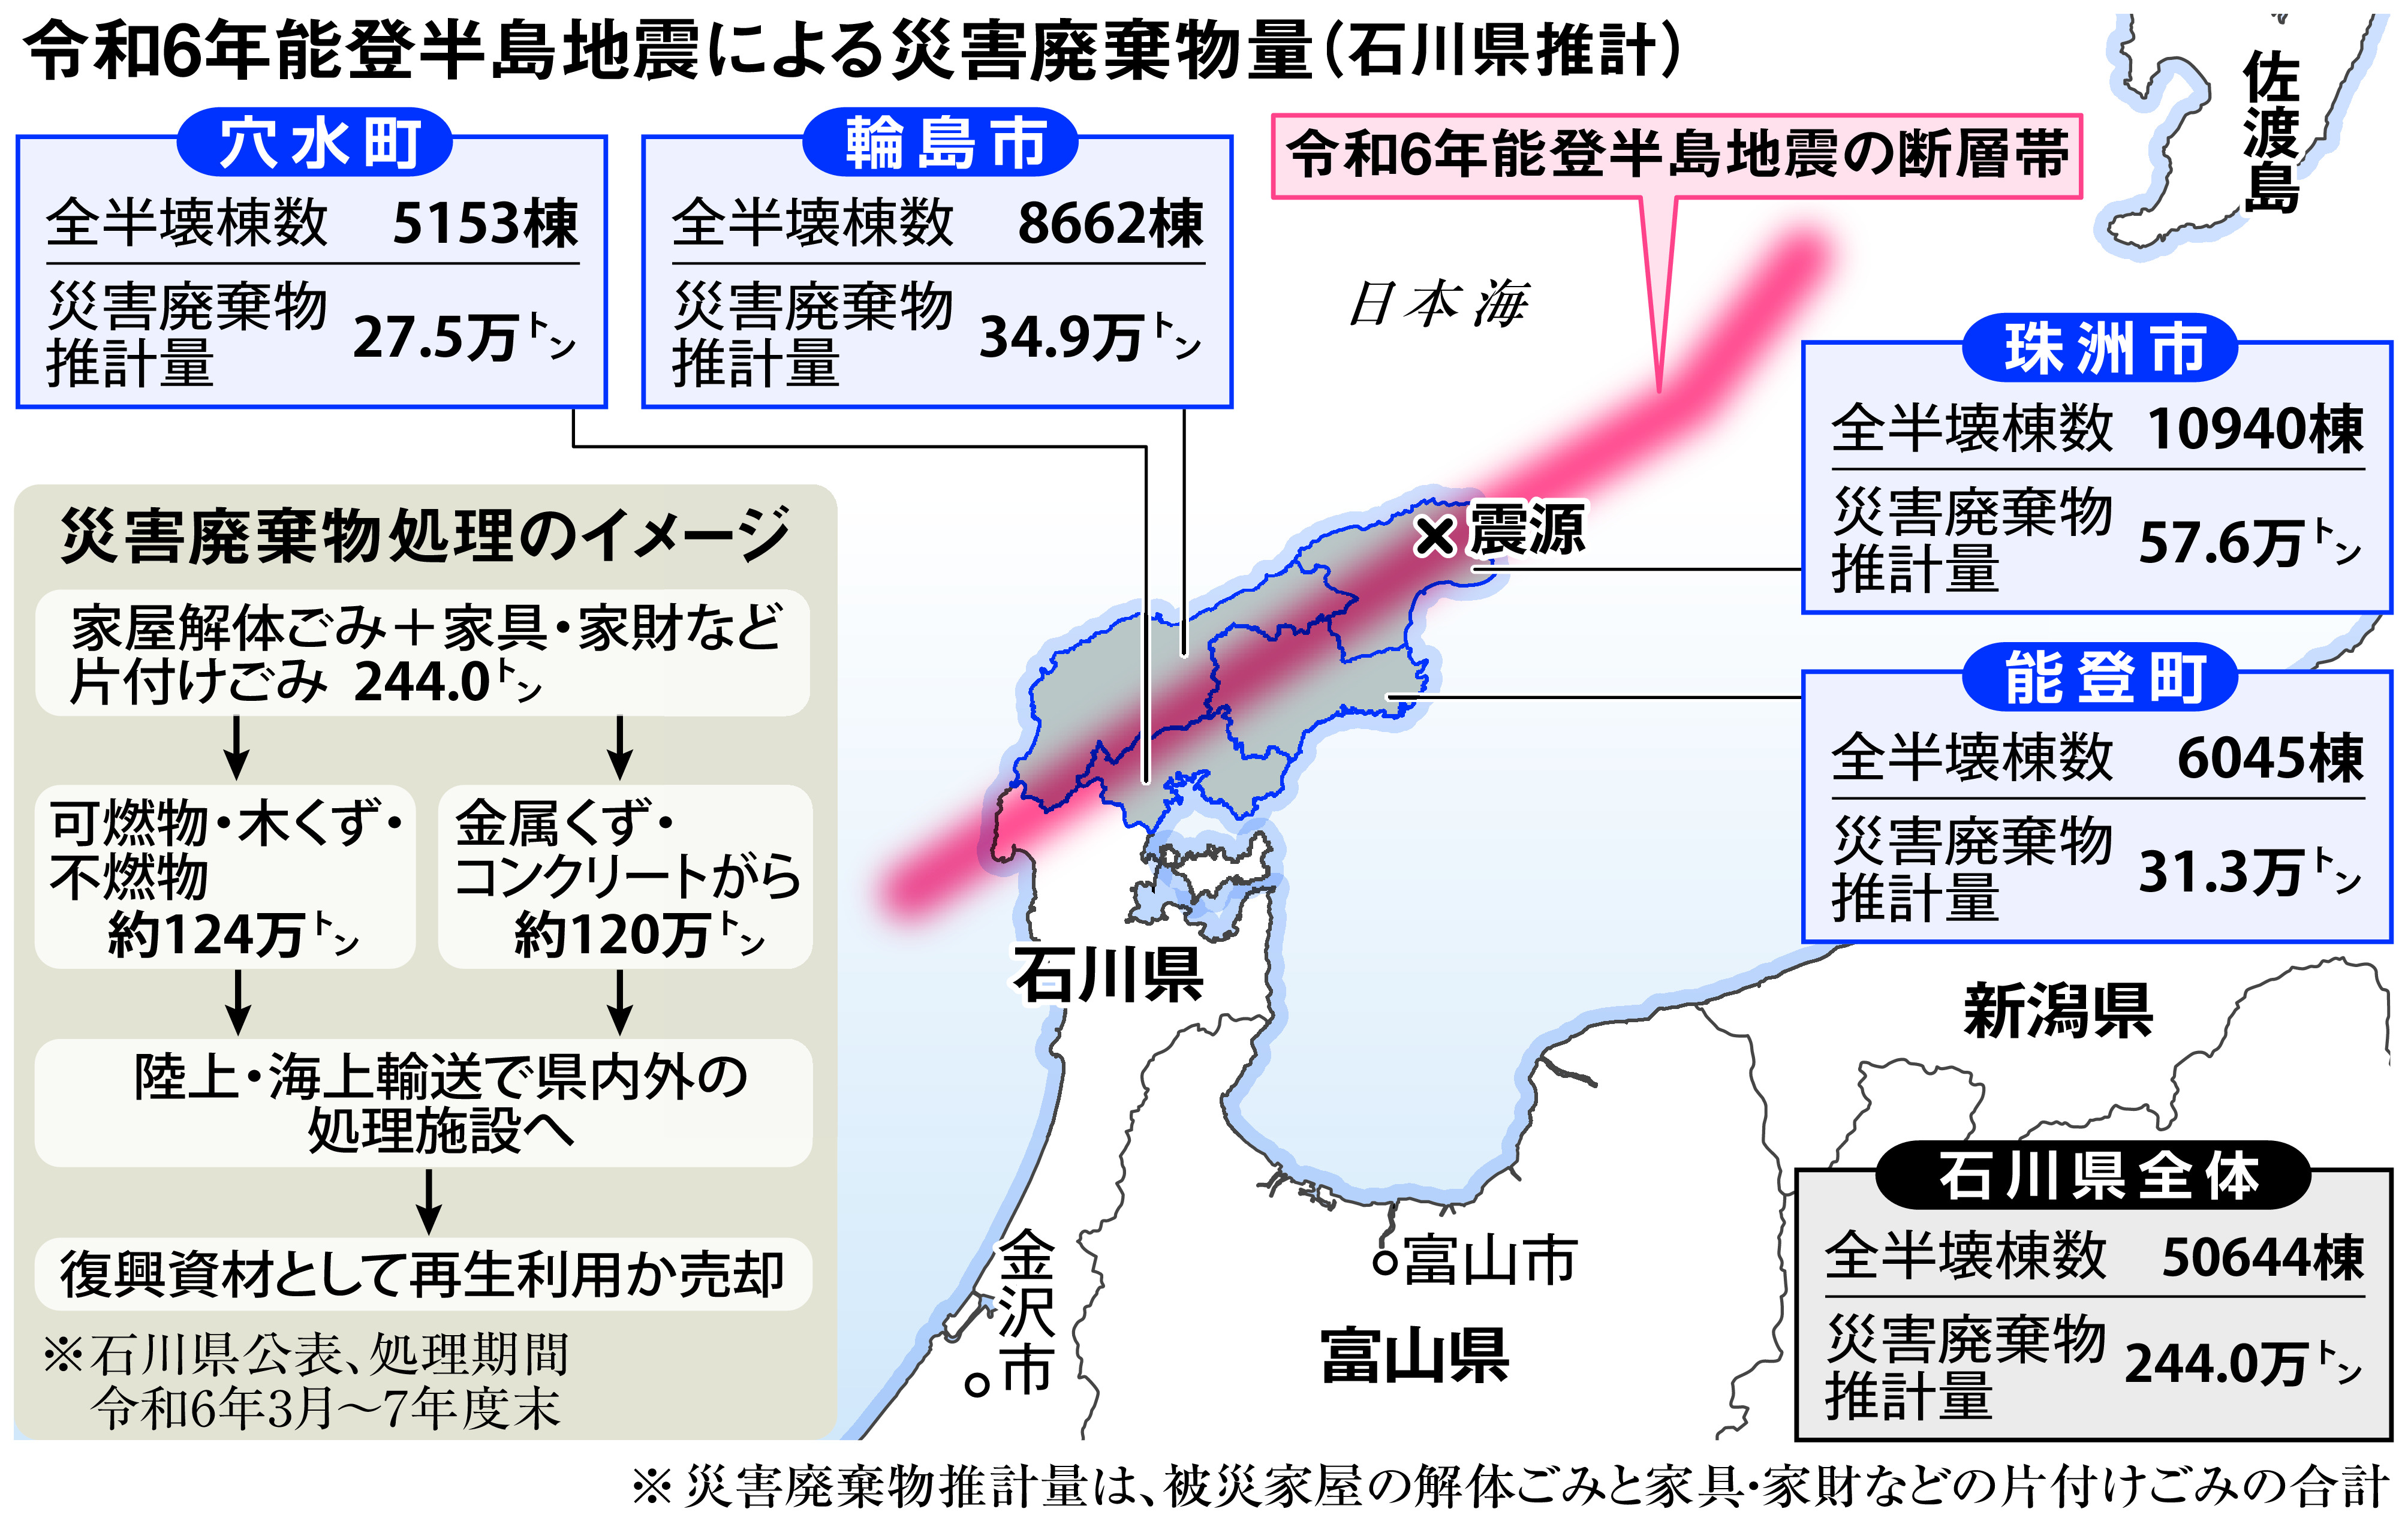 災害廃棄物処理、理解深めて 南海トラフ地震推計2.2億トン 東日本 ...